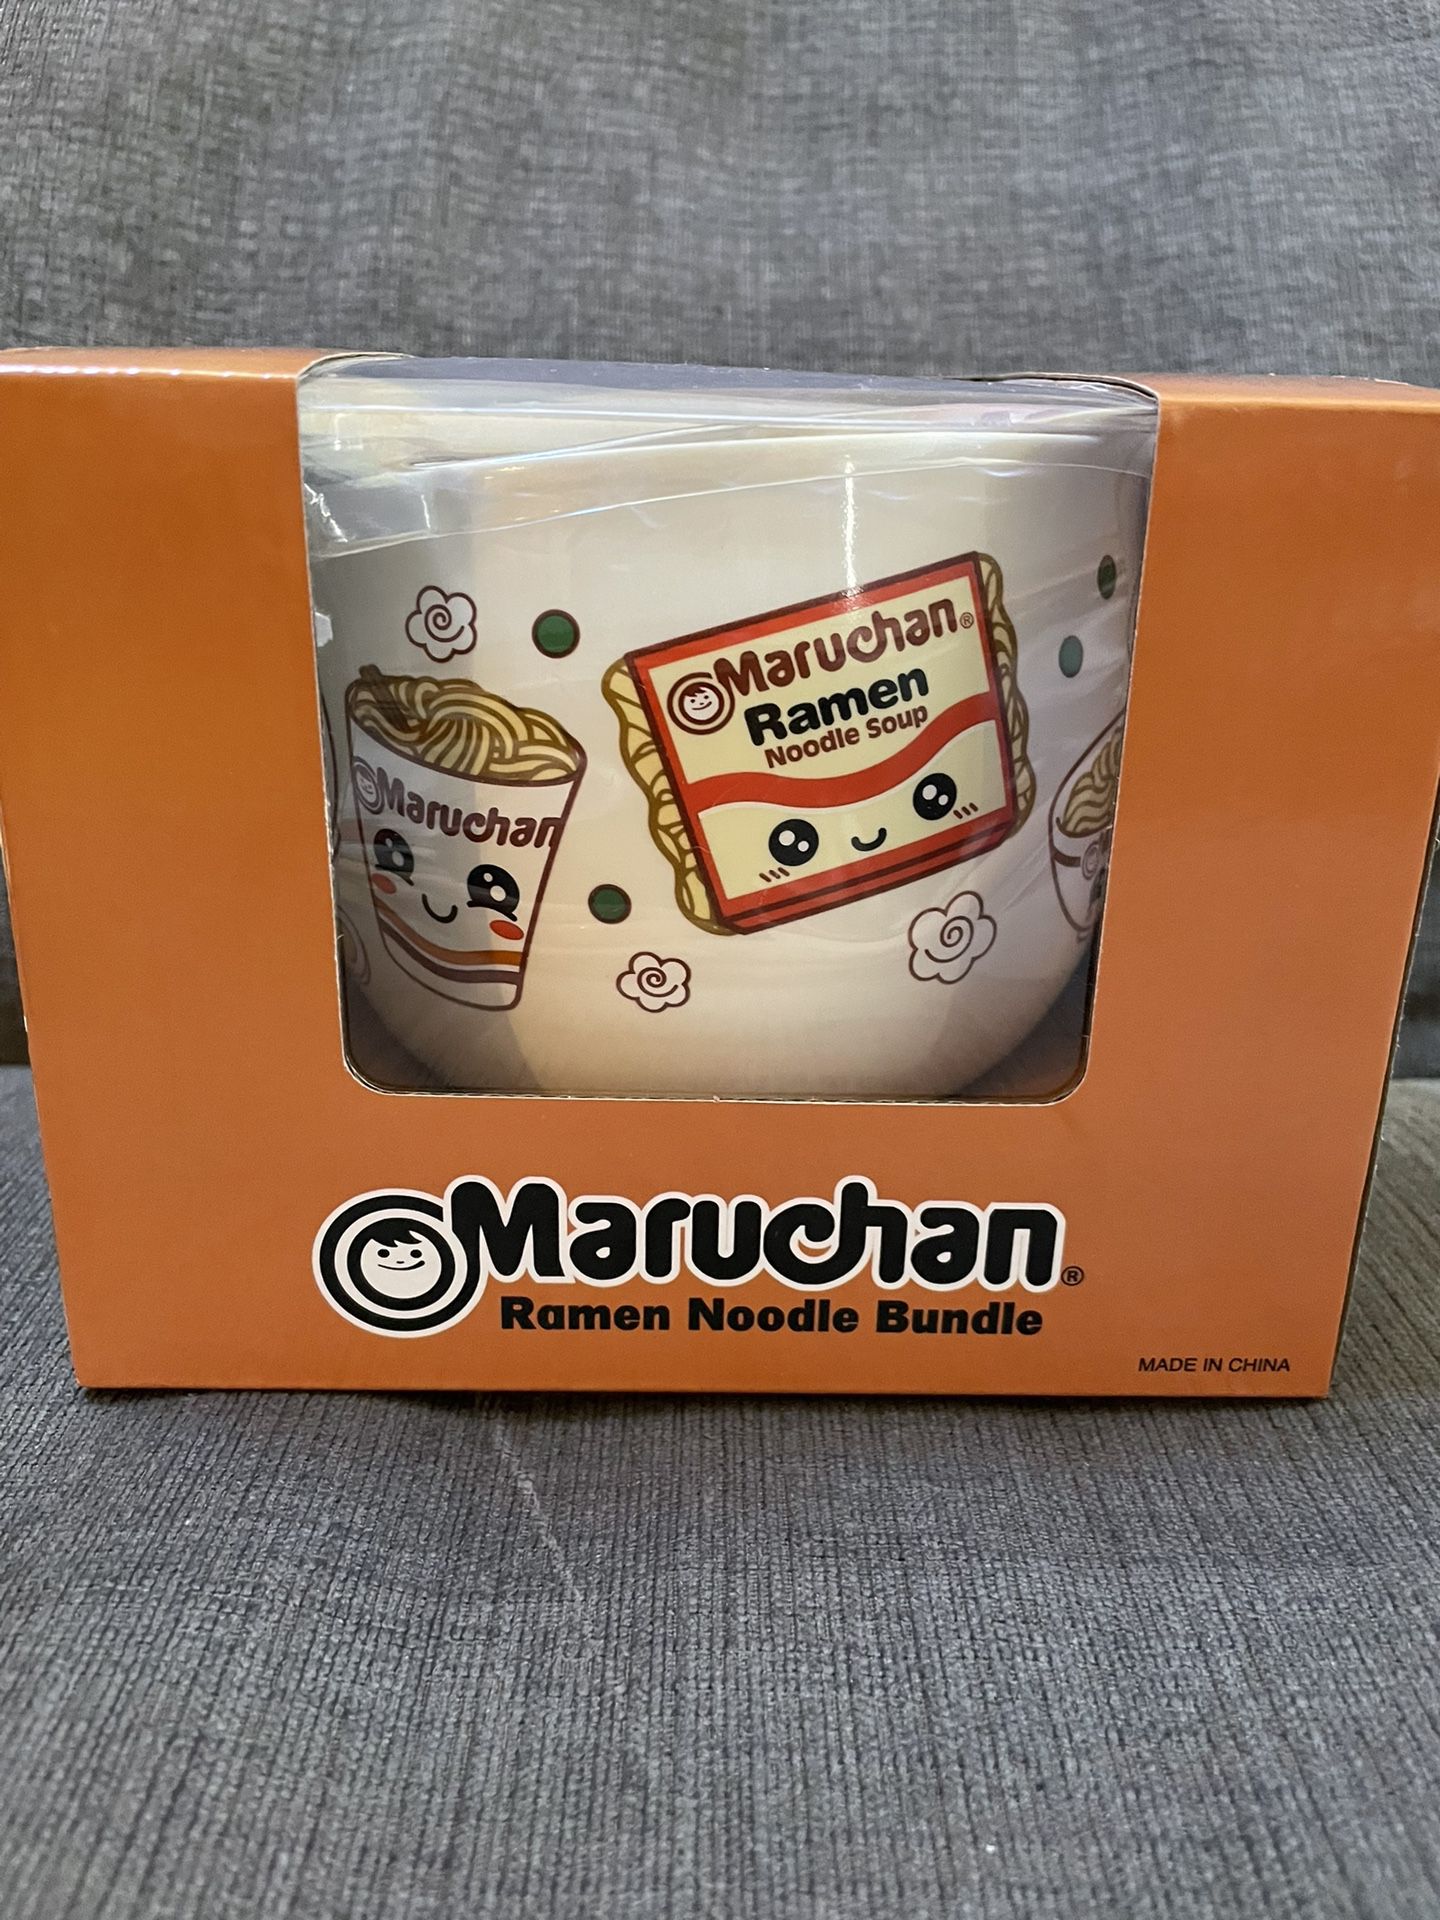 Brand New Maruchan Ramen Noodle Bowl Bundle